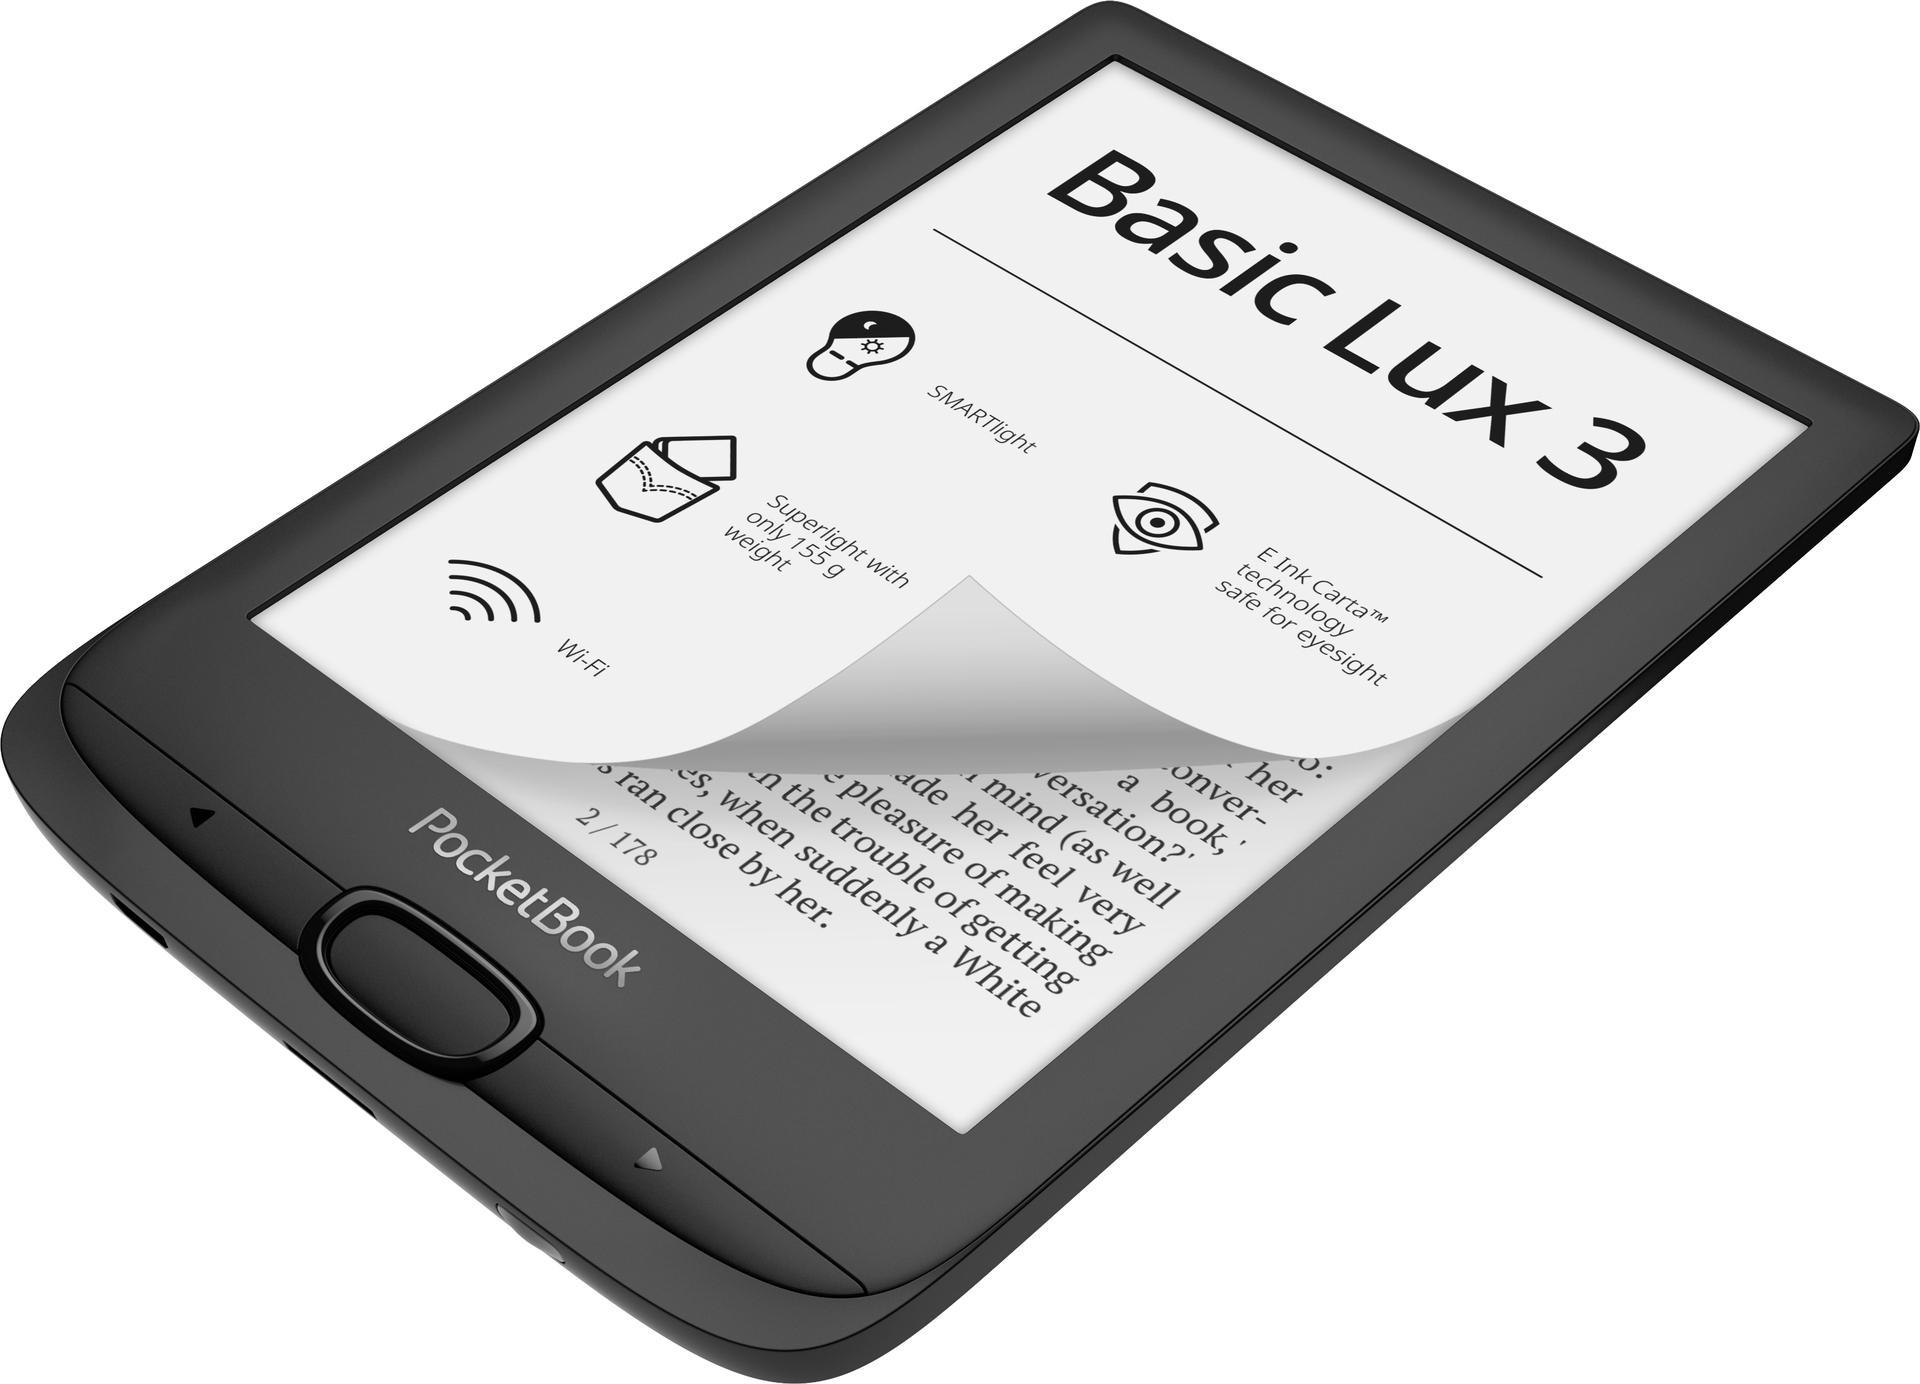 eReader Lux InkBlack 8 GB Basic InkBlack POCKETBOOK 3